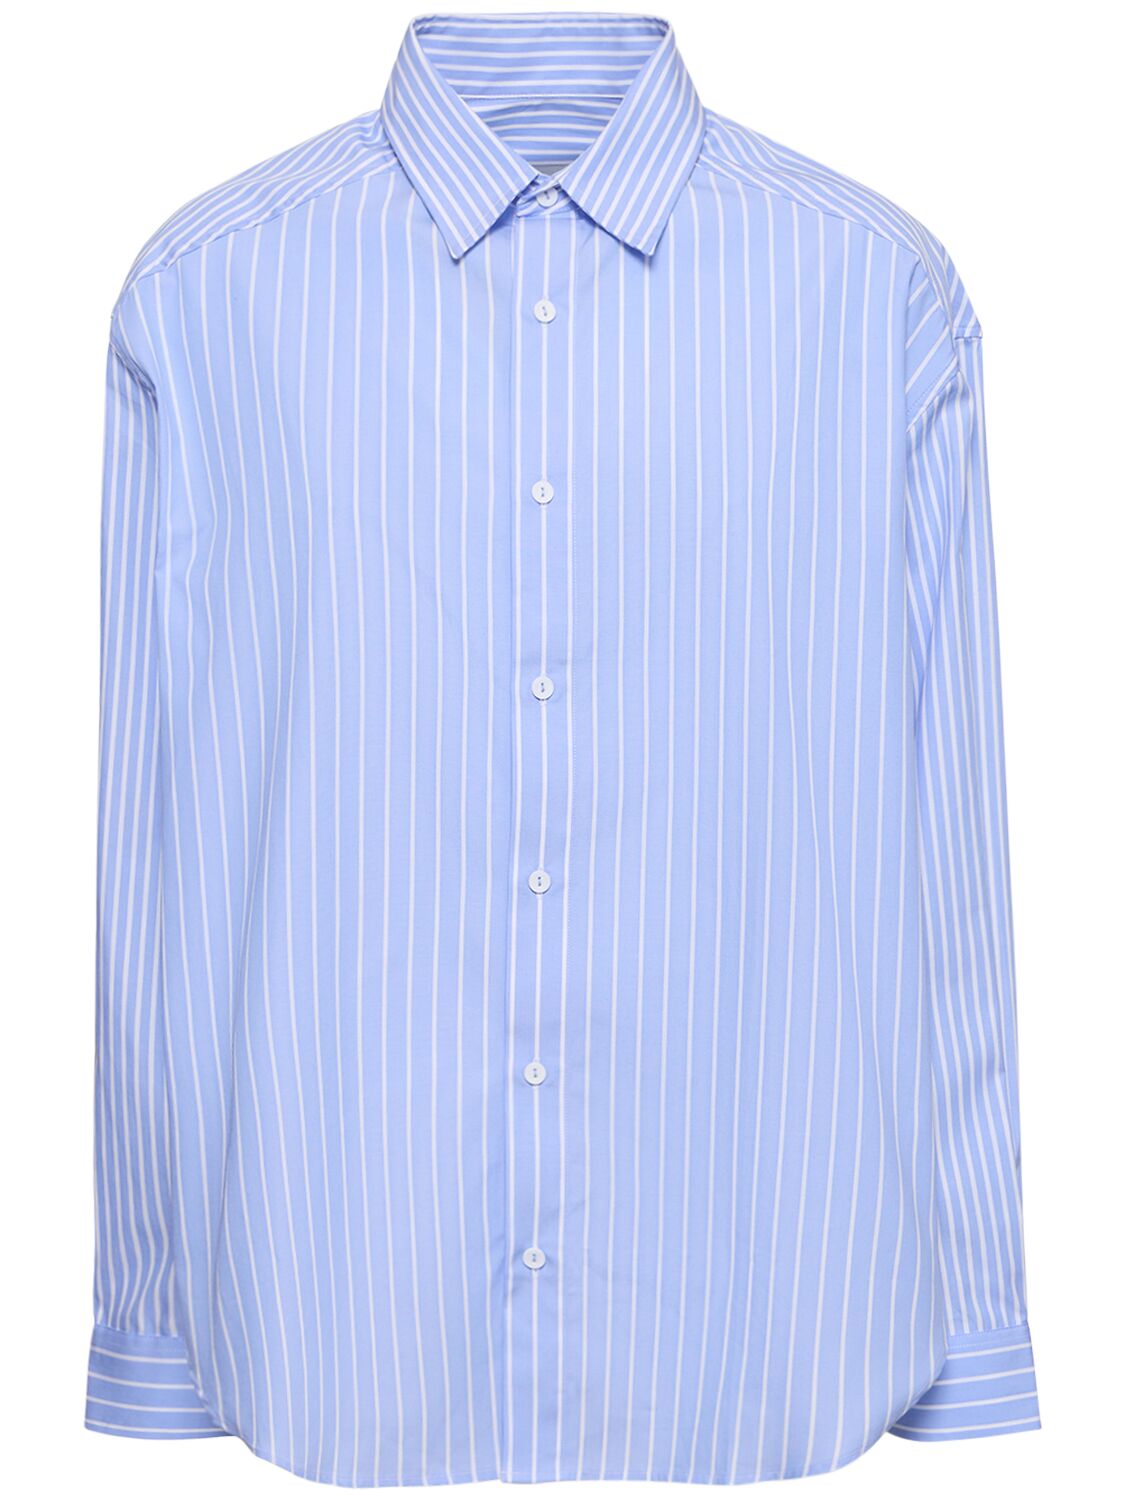 Matteau Striped Organic Cotton Classic Shirt In Blue,multi